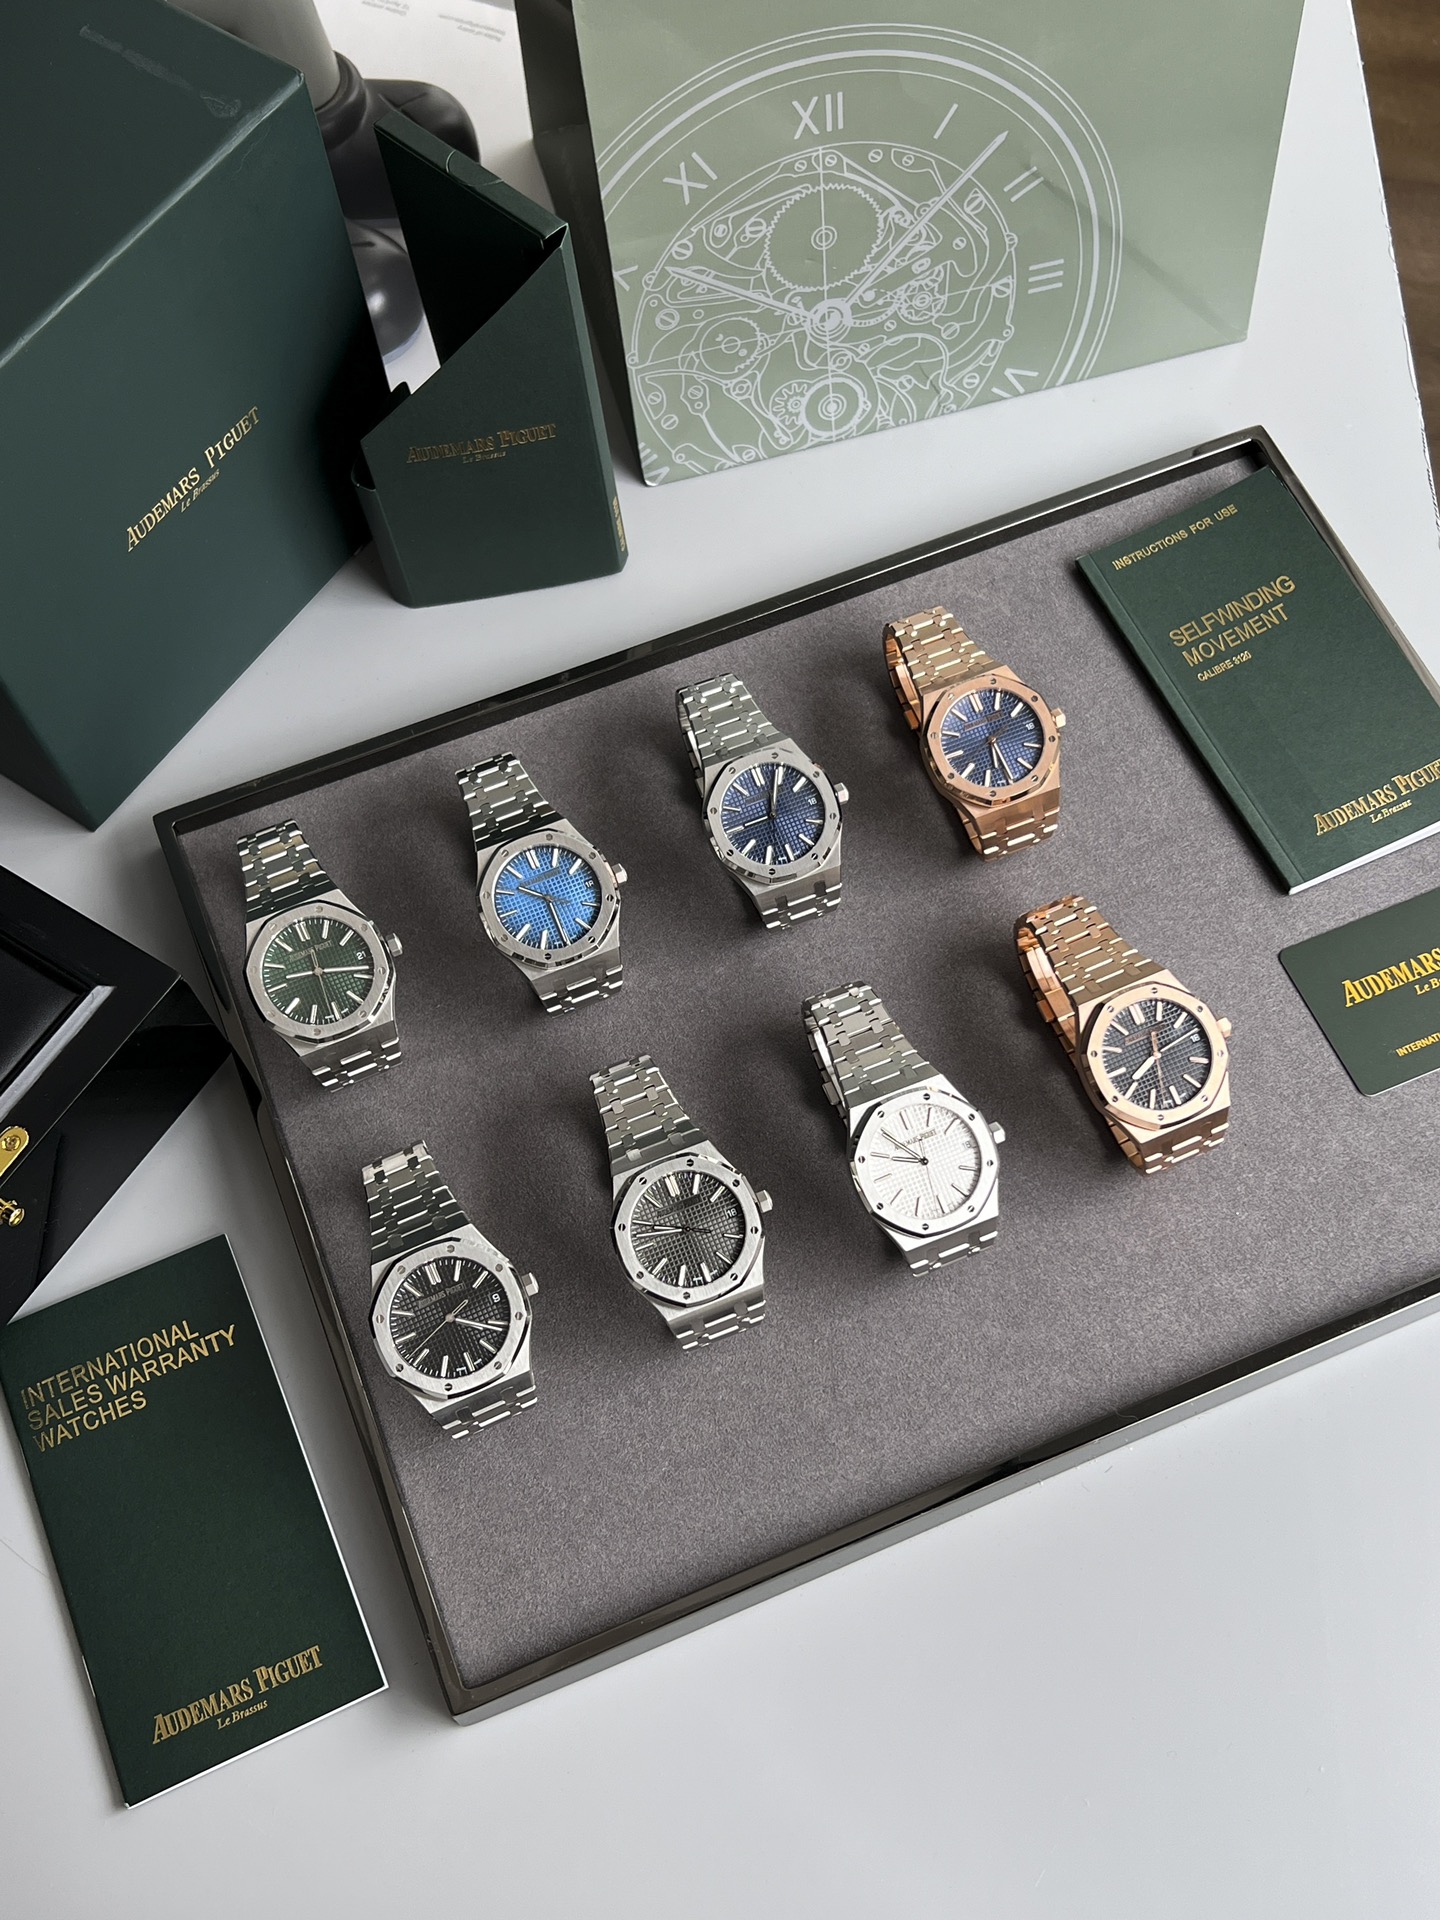 オーデマ ピゲスーパーコピー時計 41mmの新バージョン「全8色展開」50周年記念モデル15510